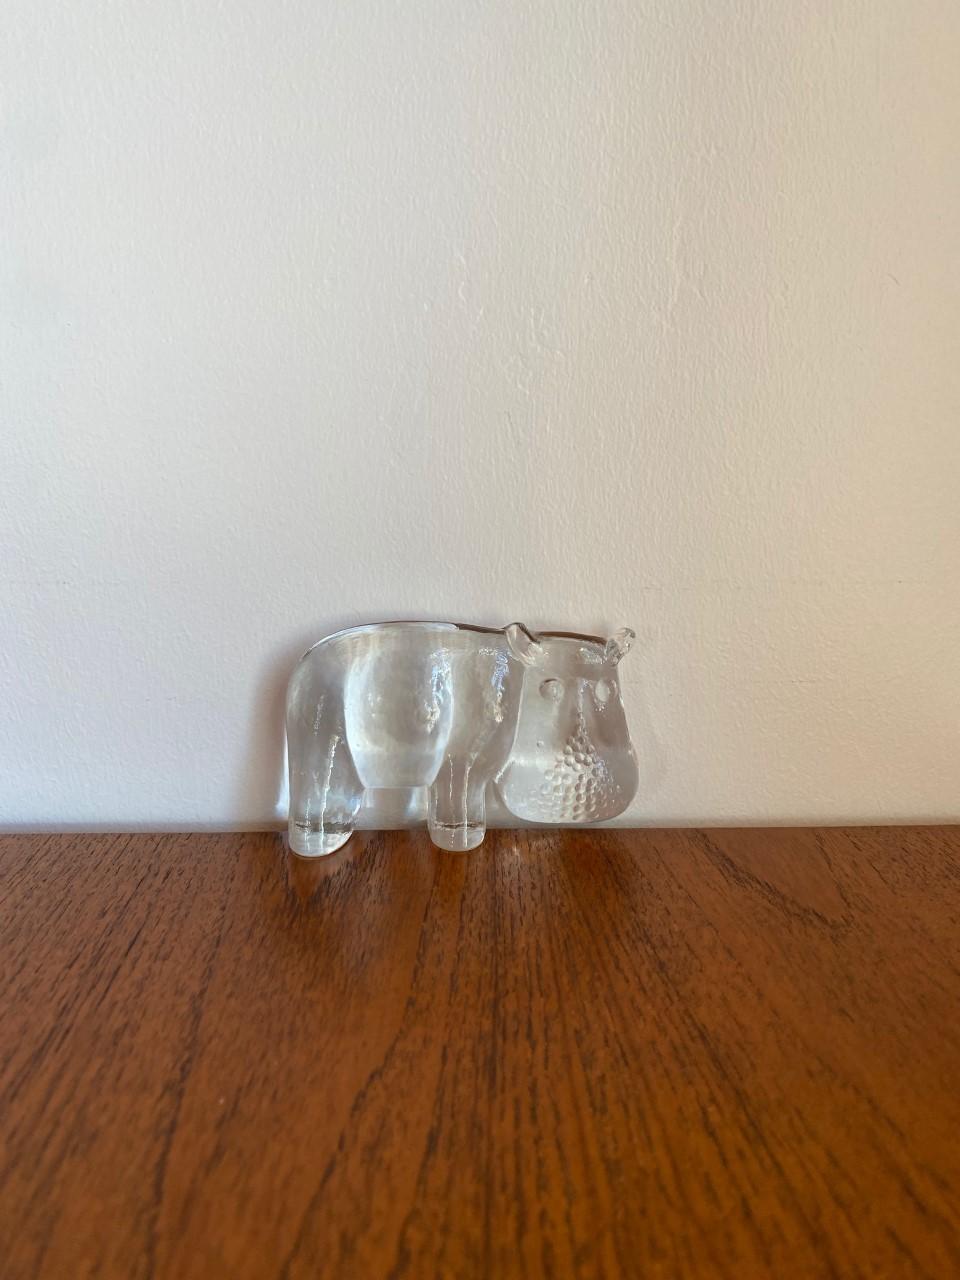 glass hippo figurine